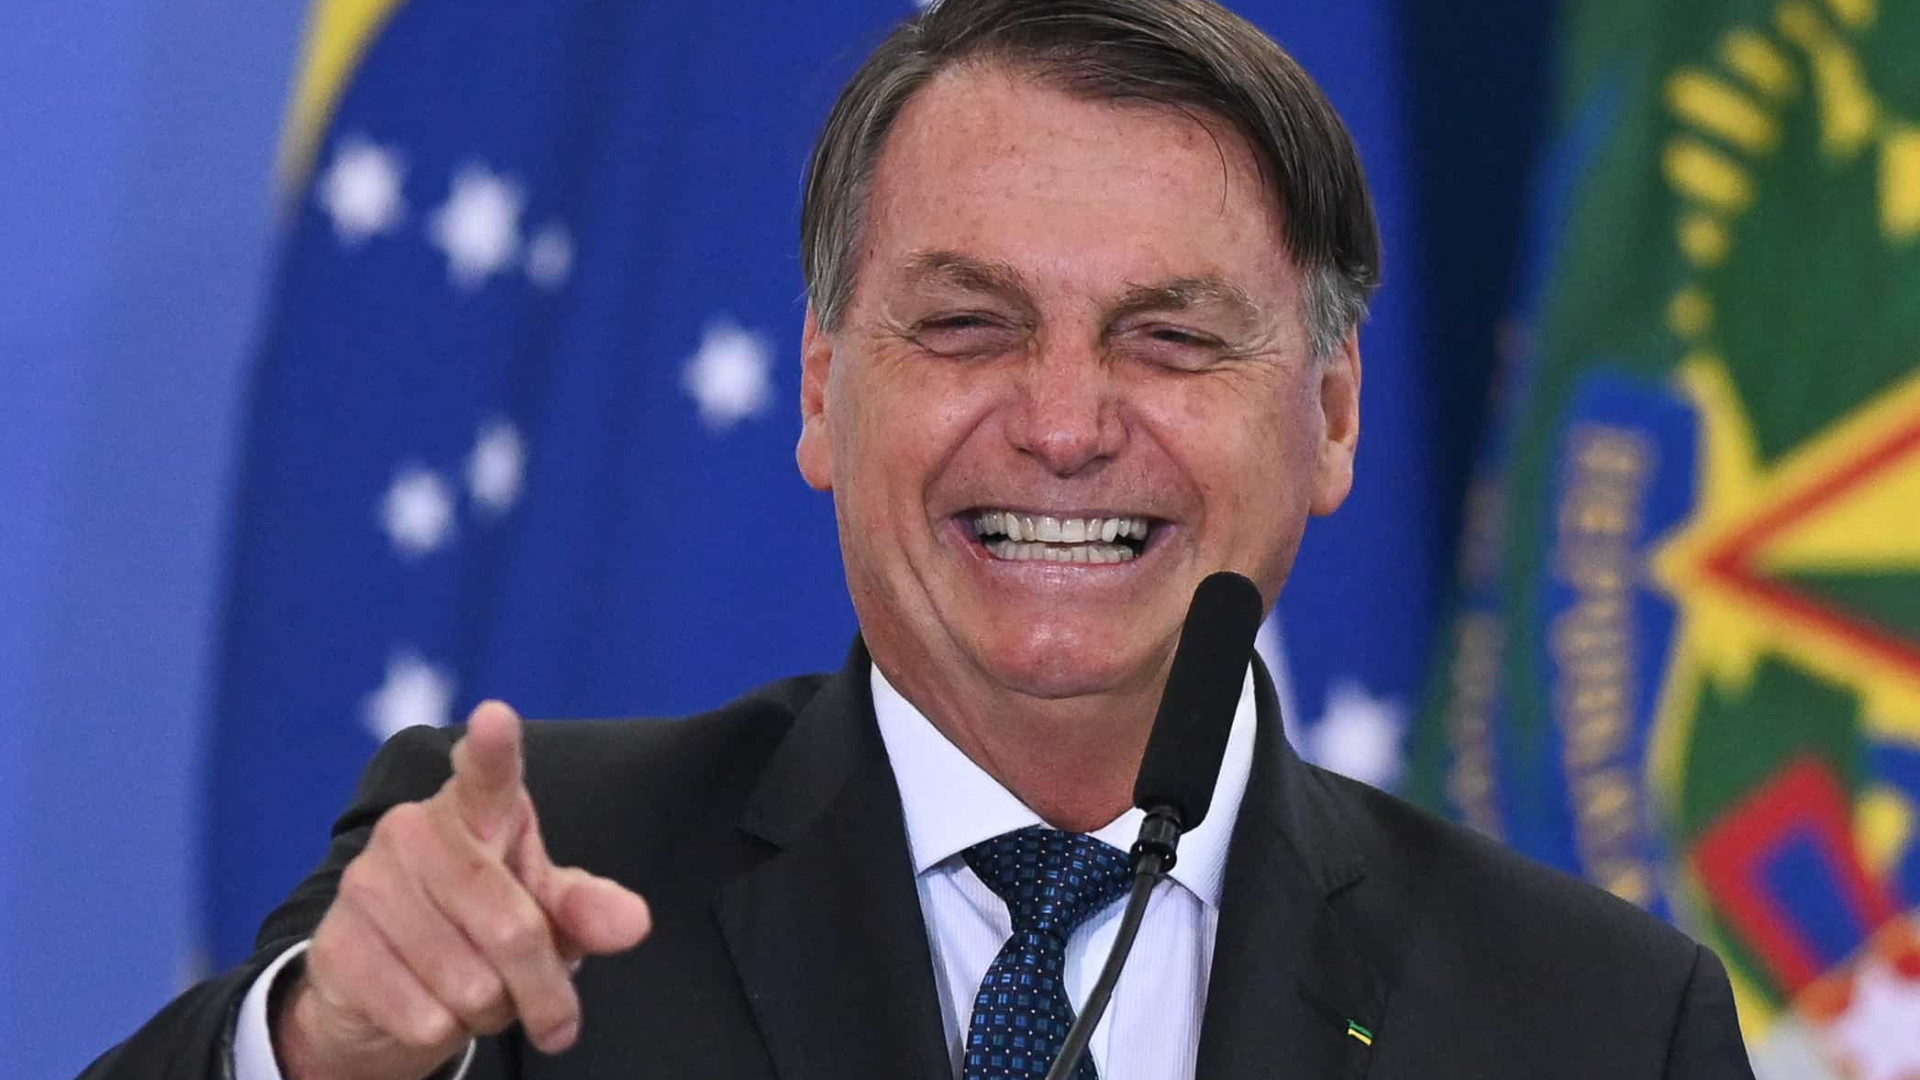 'Parece que a eficácia da vacina em SP está lá embaixo', zomba Bolsonaro